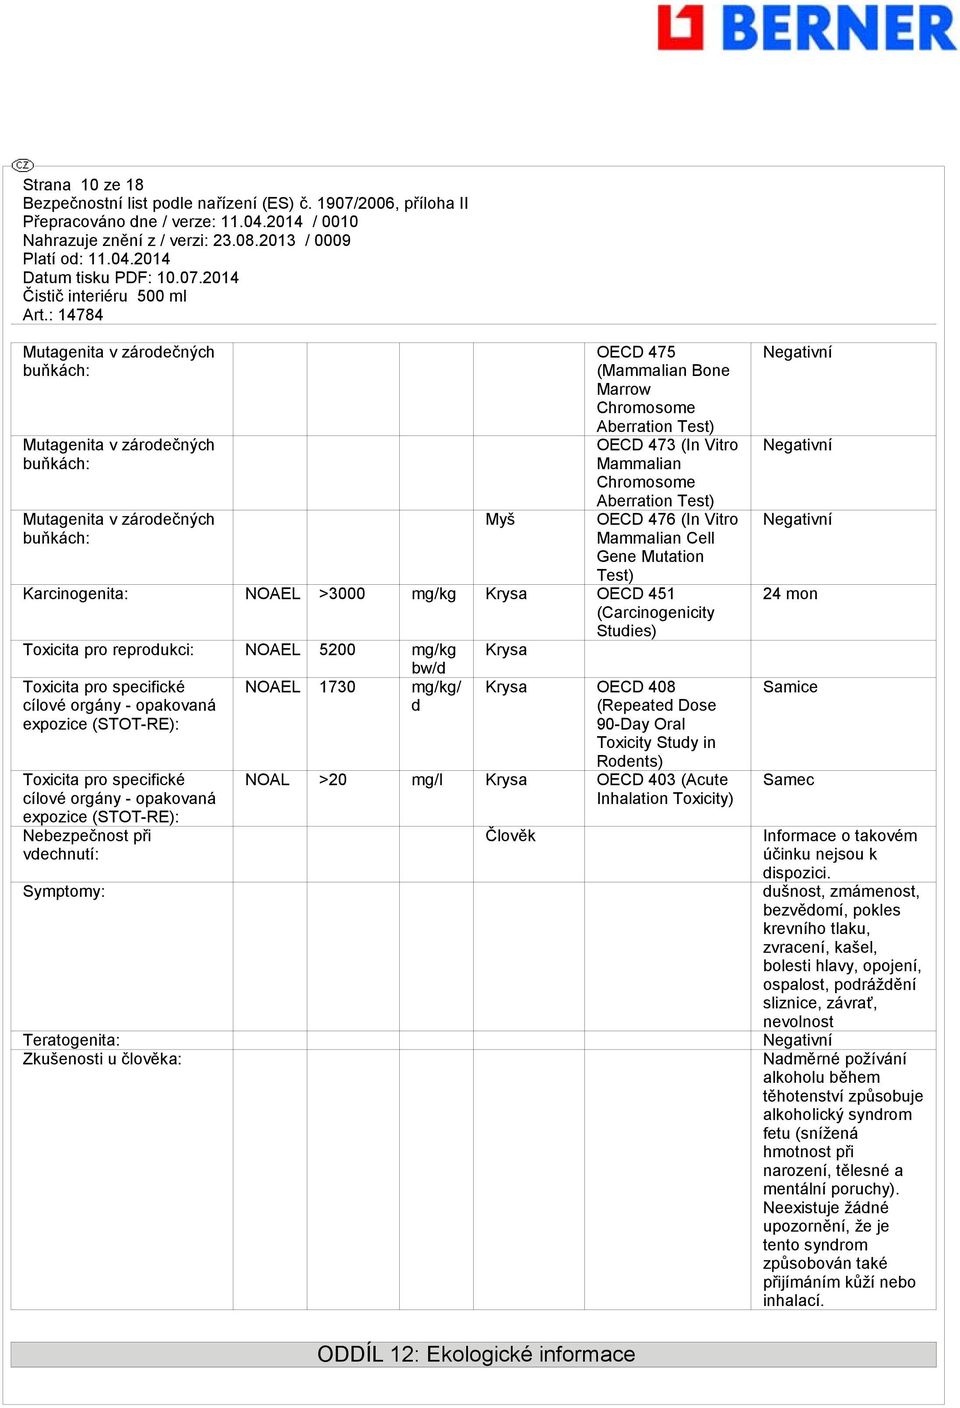 NOAEL 5200 mg/kg bw/d Toxicita pro specifické NOAEL 1730 mg/kg/ cílové orgány - opakovaná d expozice (STOT-RE): Toxicita pro specifické cílové orgány - opakovaná expozice (STOT-RE): Nebezpečnost při